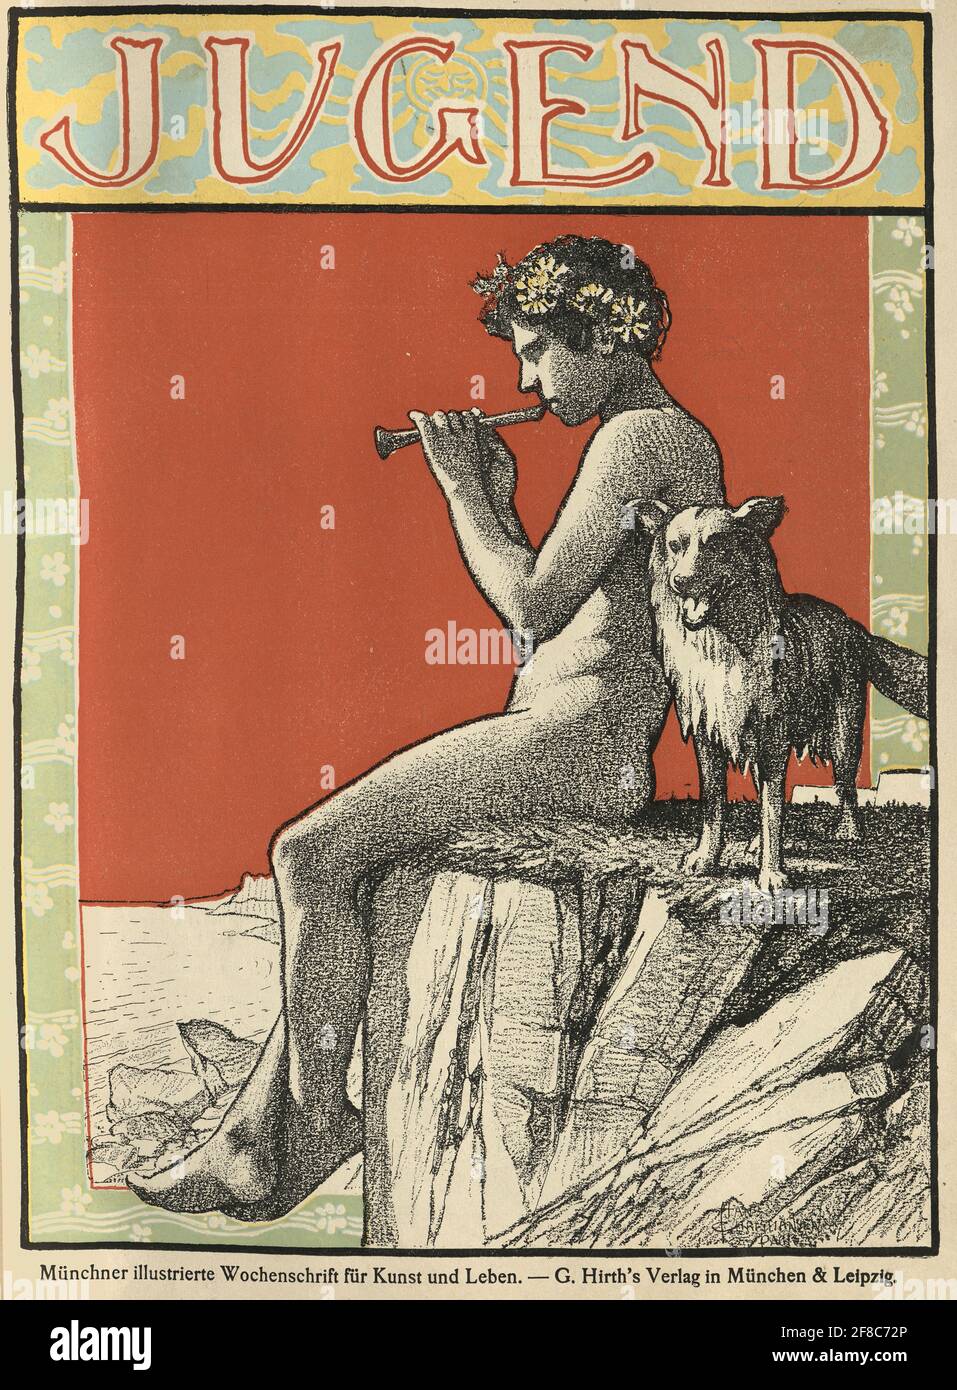 Couverture du magazine d'art allemand Jugend, 1896, petit garçon grec classique jouant la flûte, avec son chien Banque D'Images